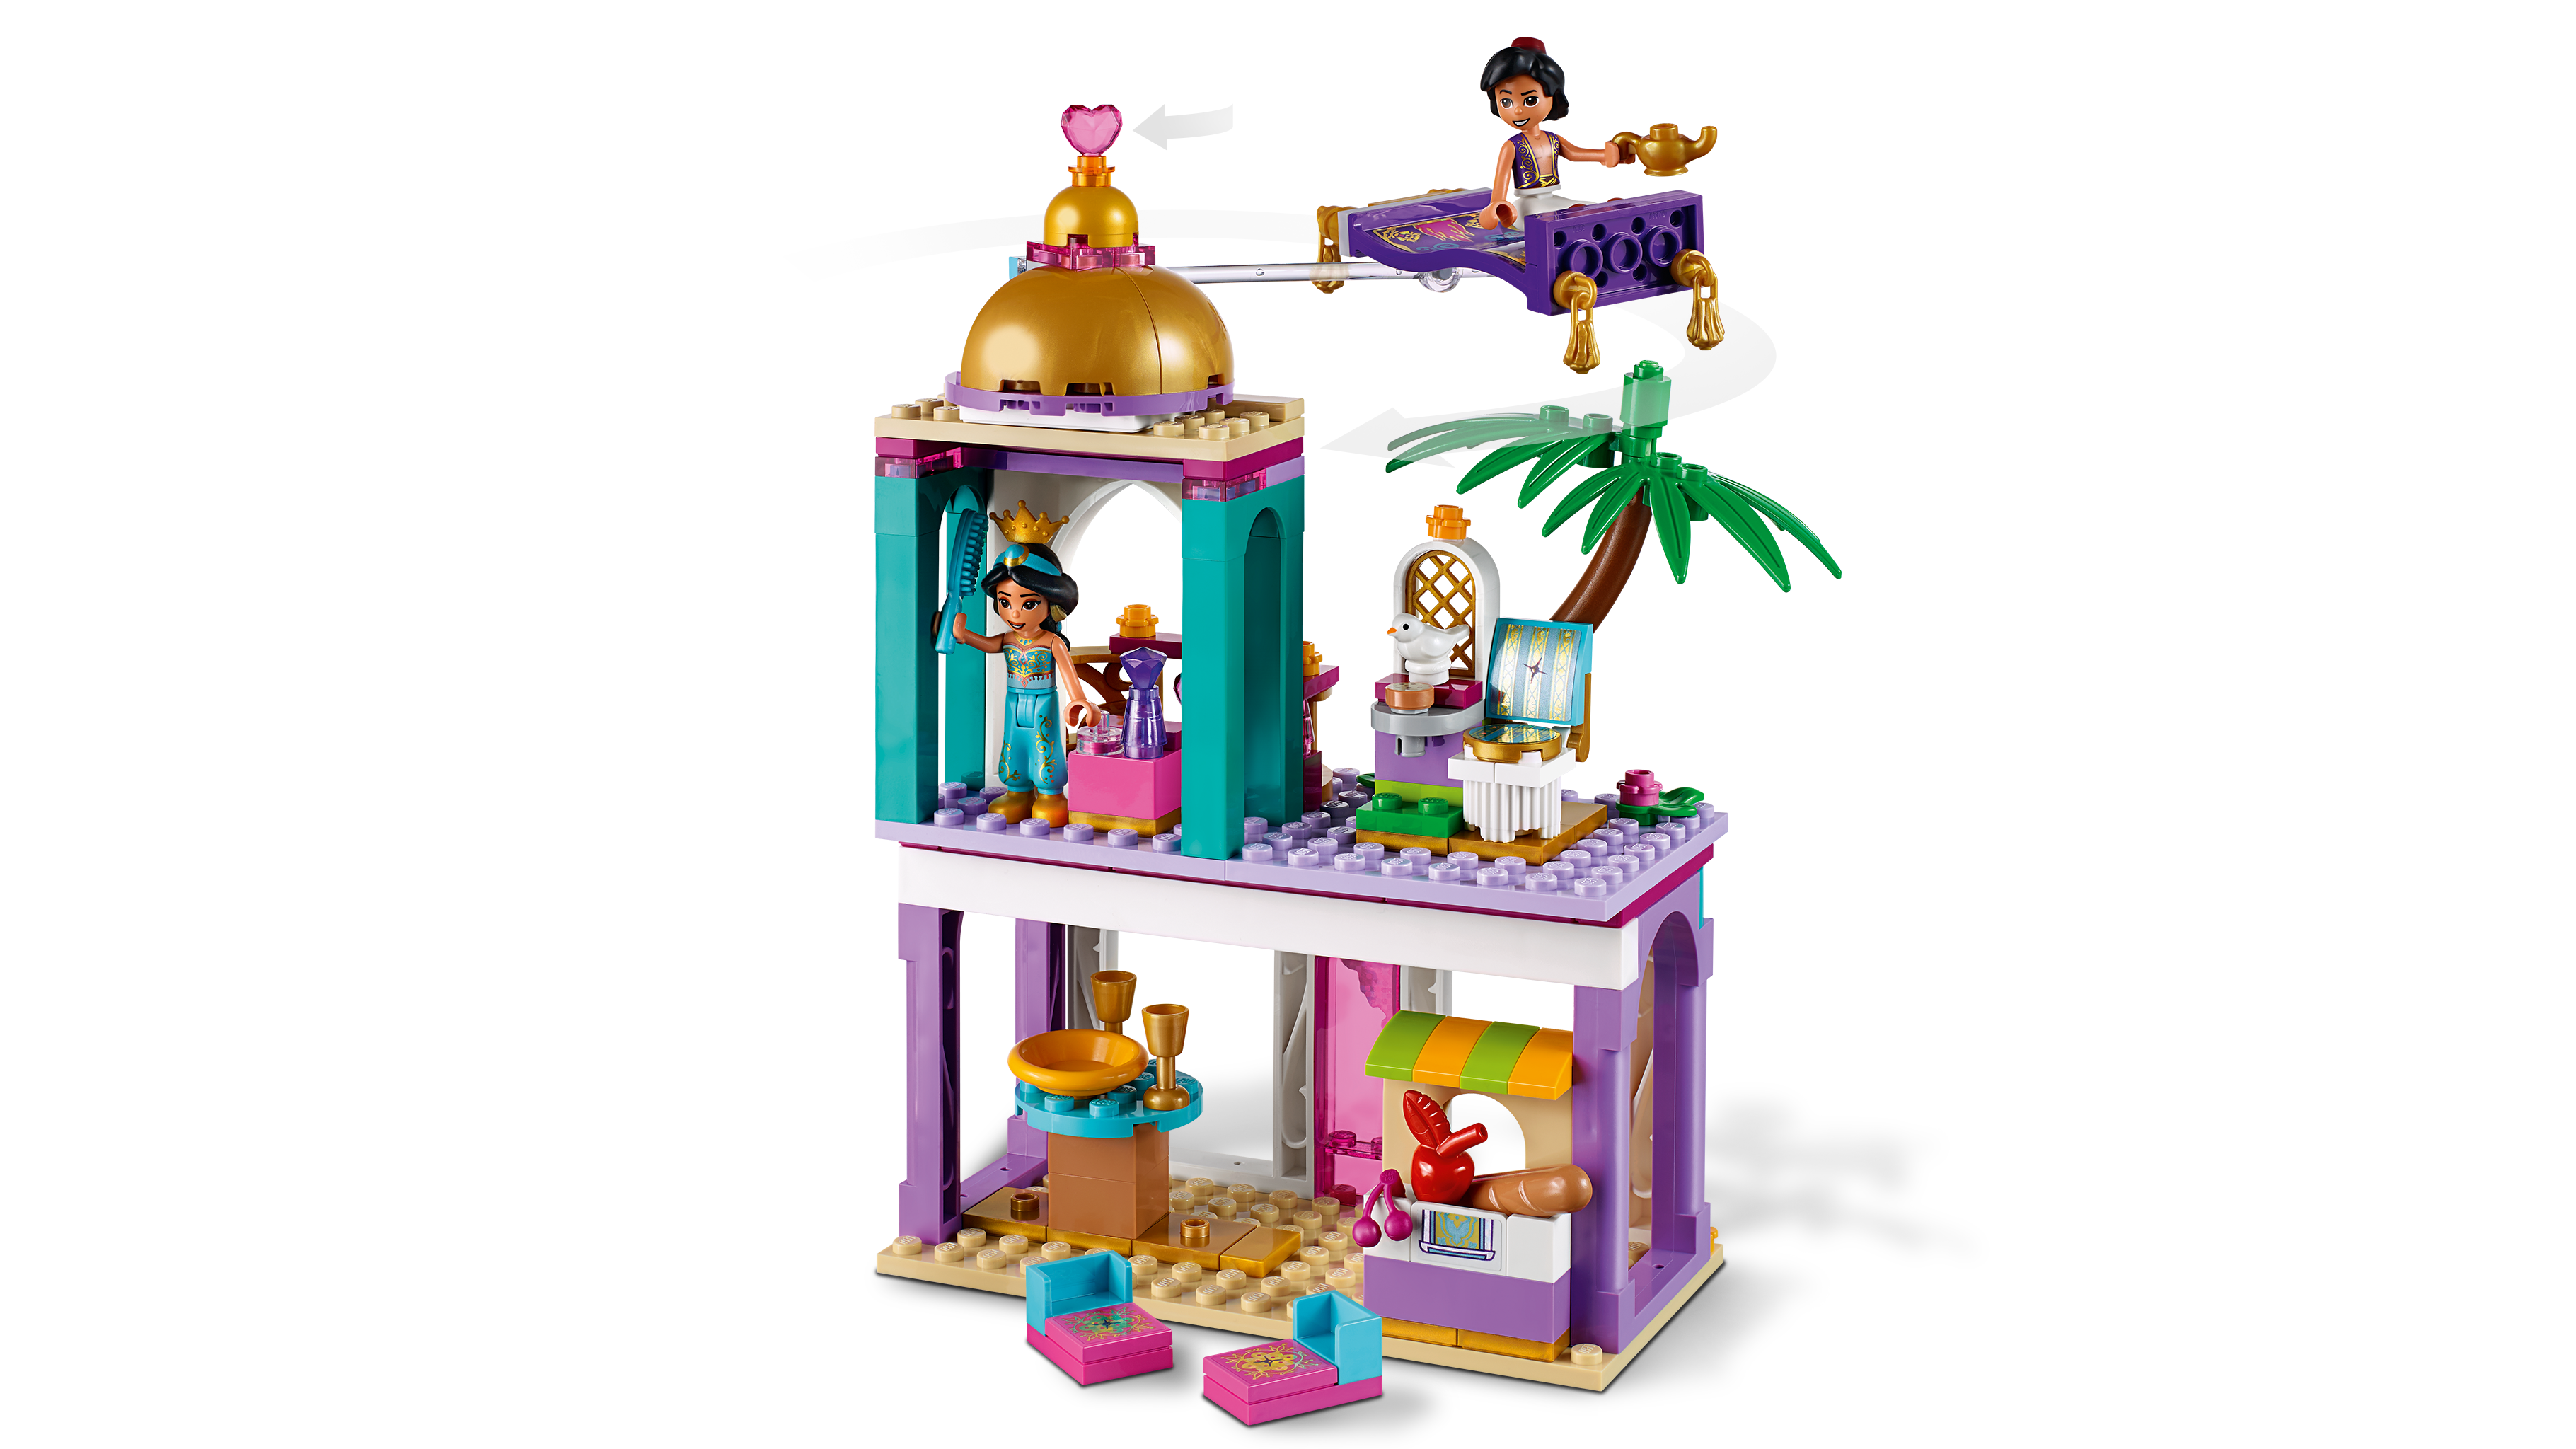 Beurs verliezen Insecten tellen LEGO Princess Jasmine and Aladdin Figures 41161 - Walmart.com